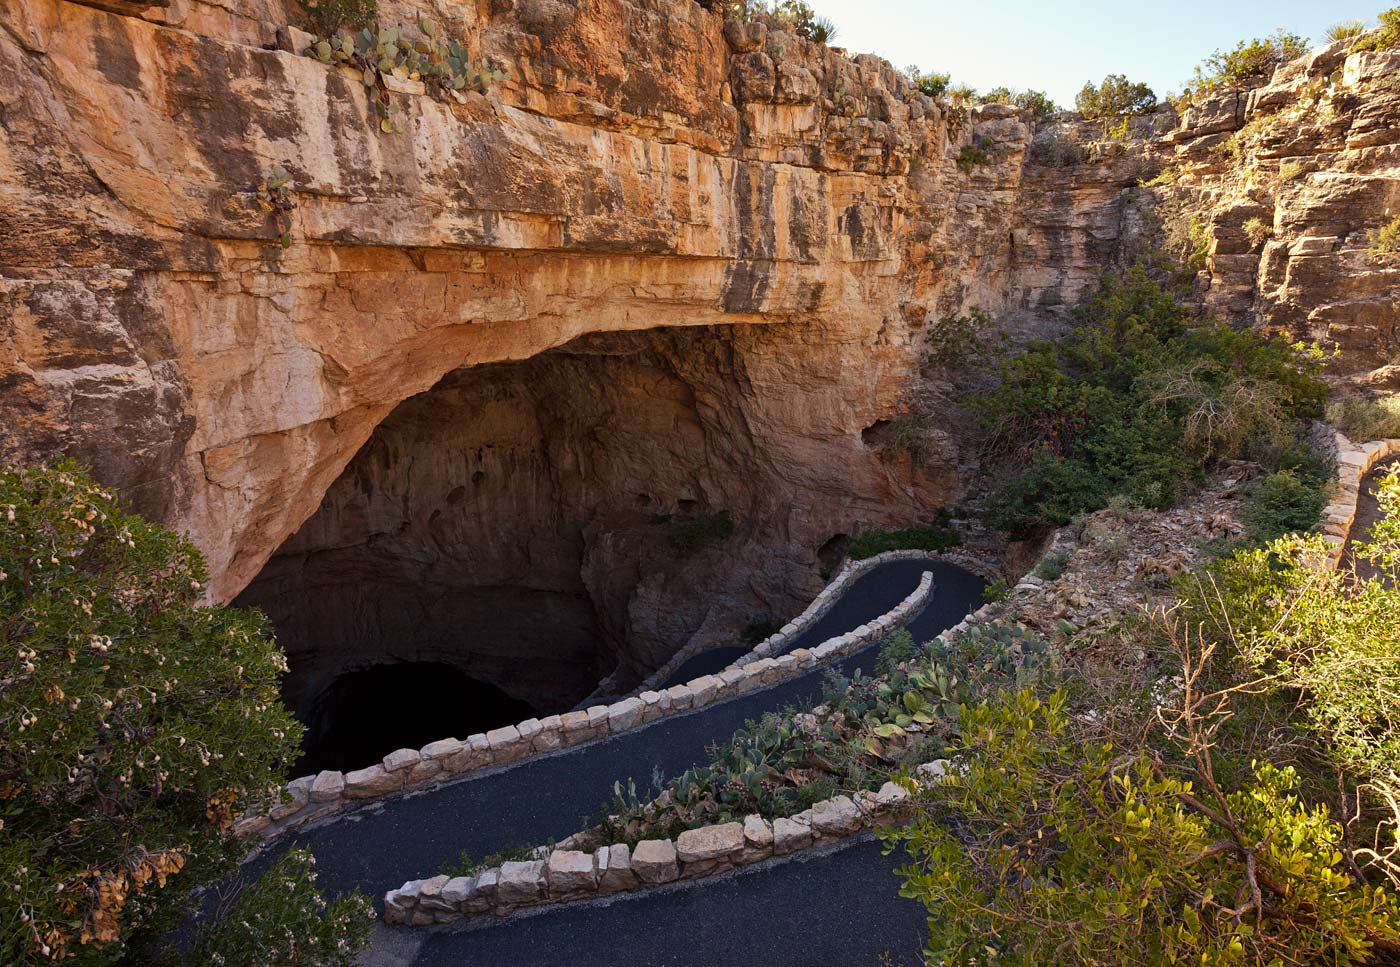 Carlsbad-Caverns-National-Park-ABP-Natural-Entrance.jpg